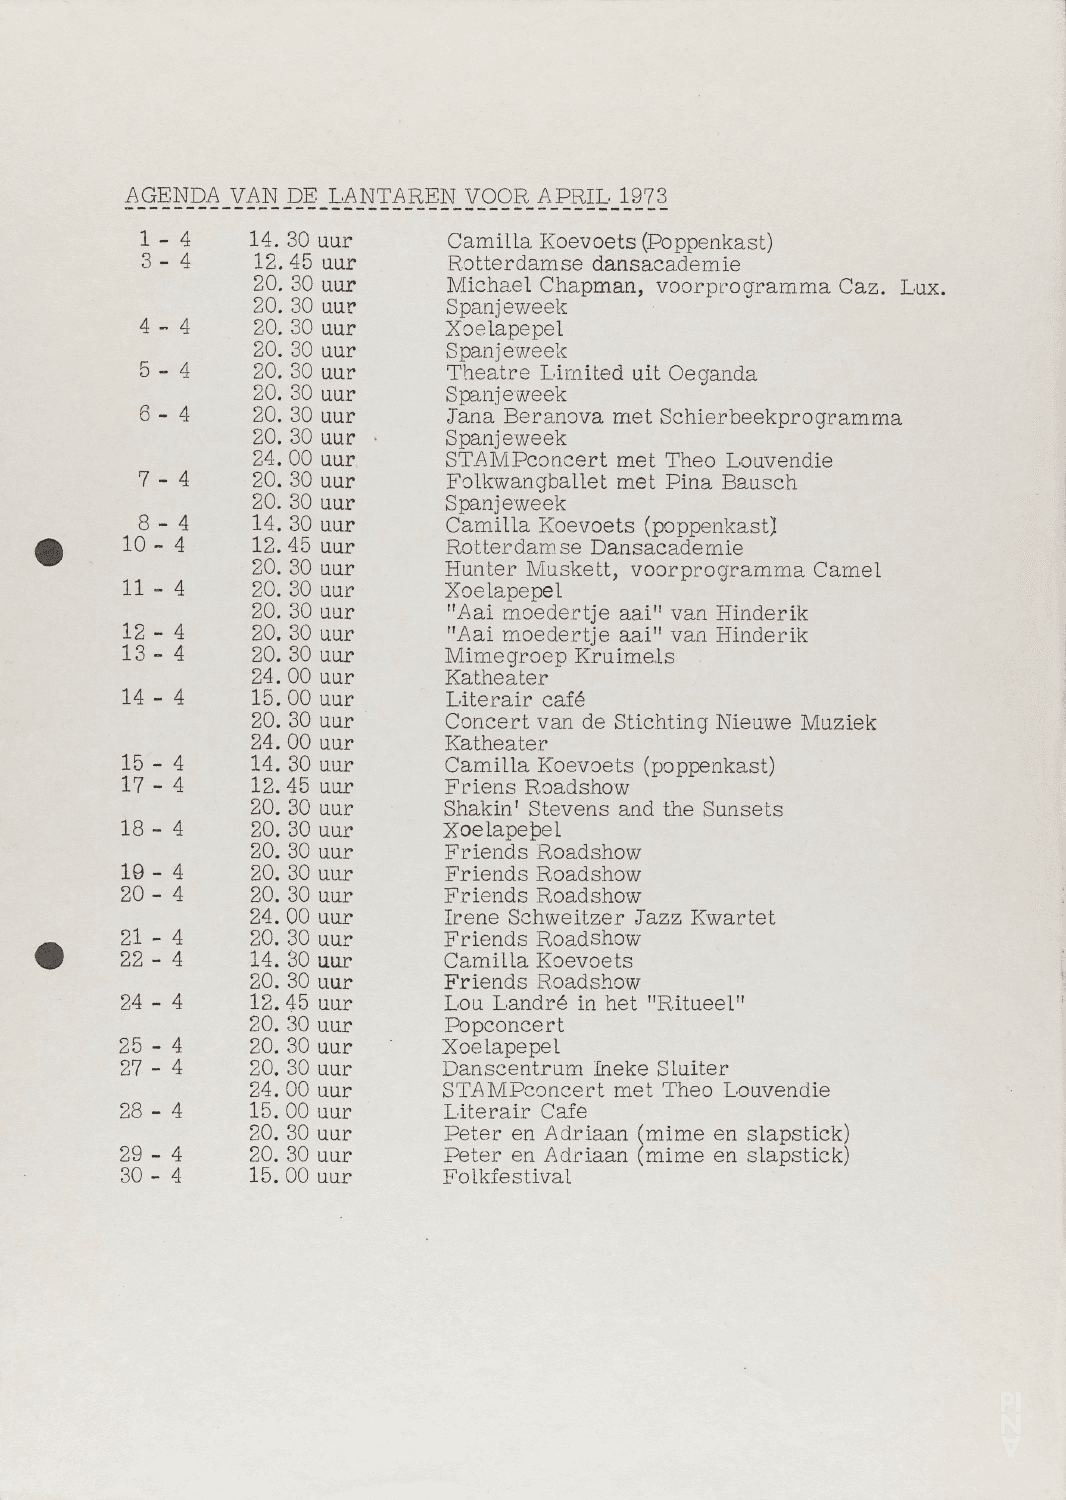 Season programme for “Nachnull (After Zero)”, “Aktionen für Tänzer”, “PHILIPS 836 887 DSY” and more by Pina Bausch with Folkwangballett in in Rotterdam, April 7, 1973